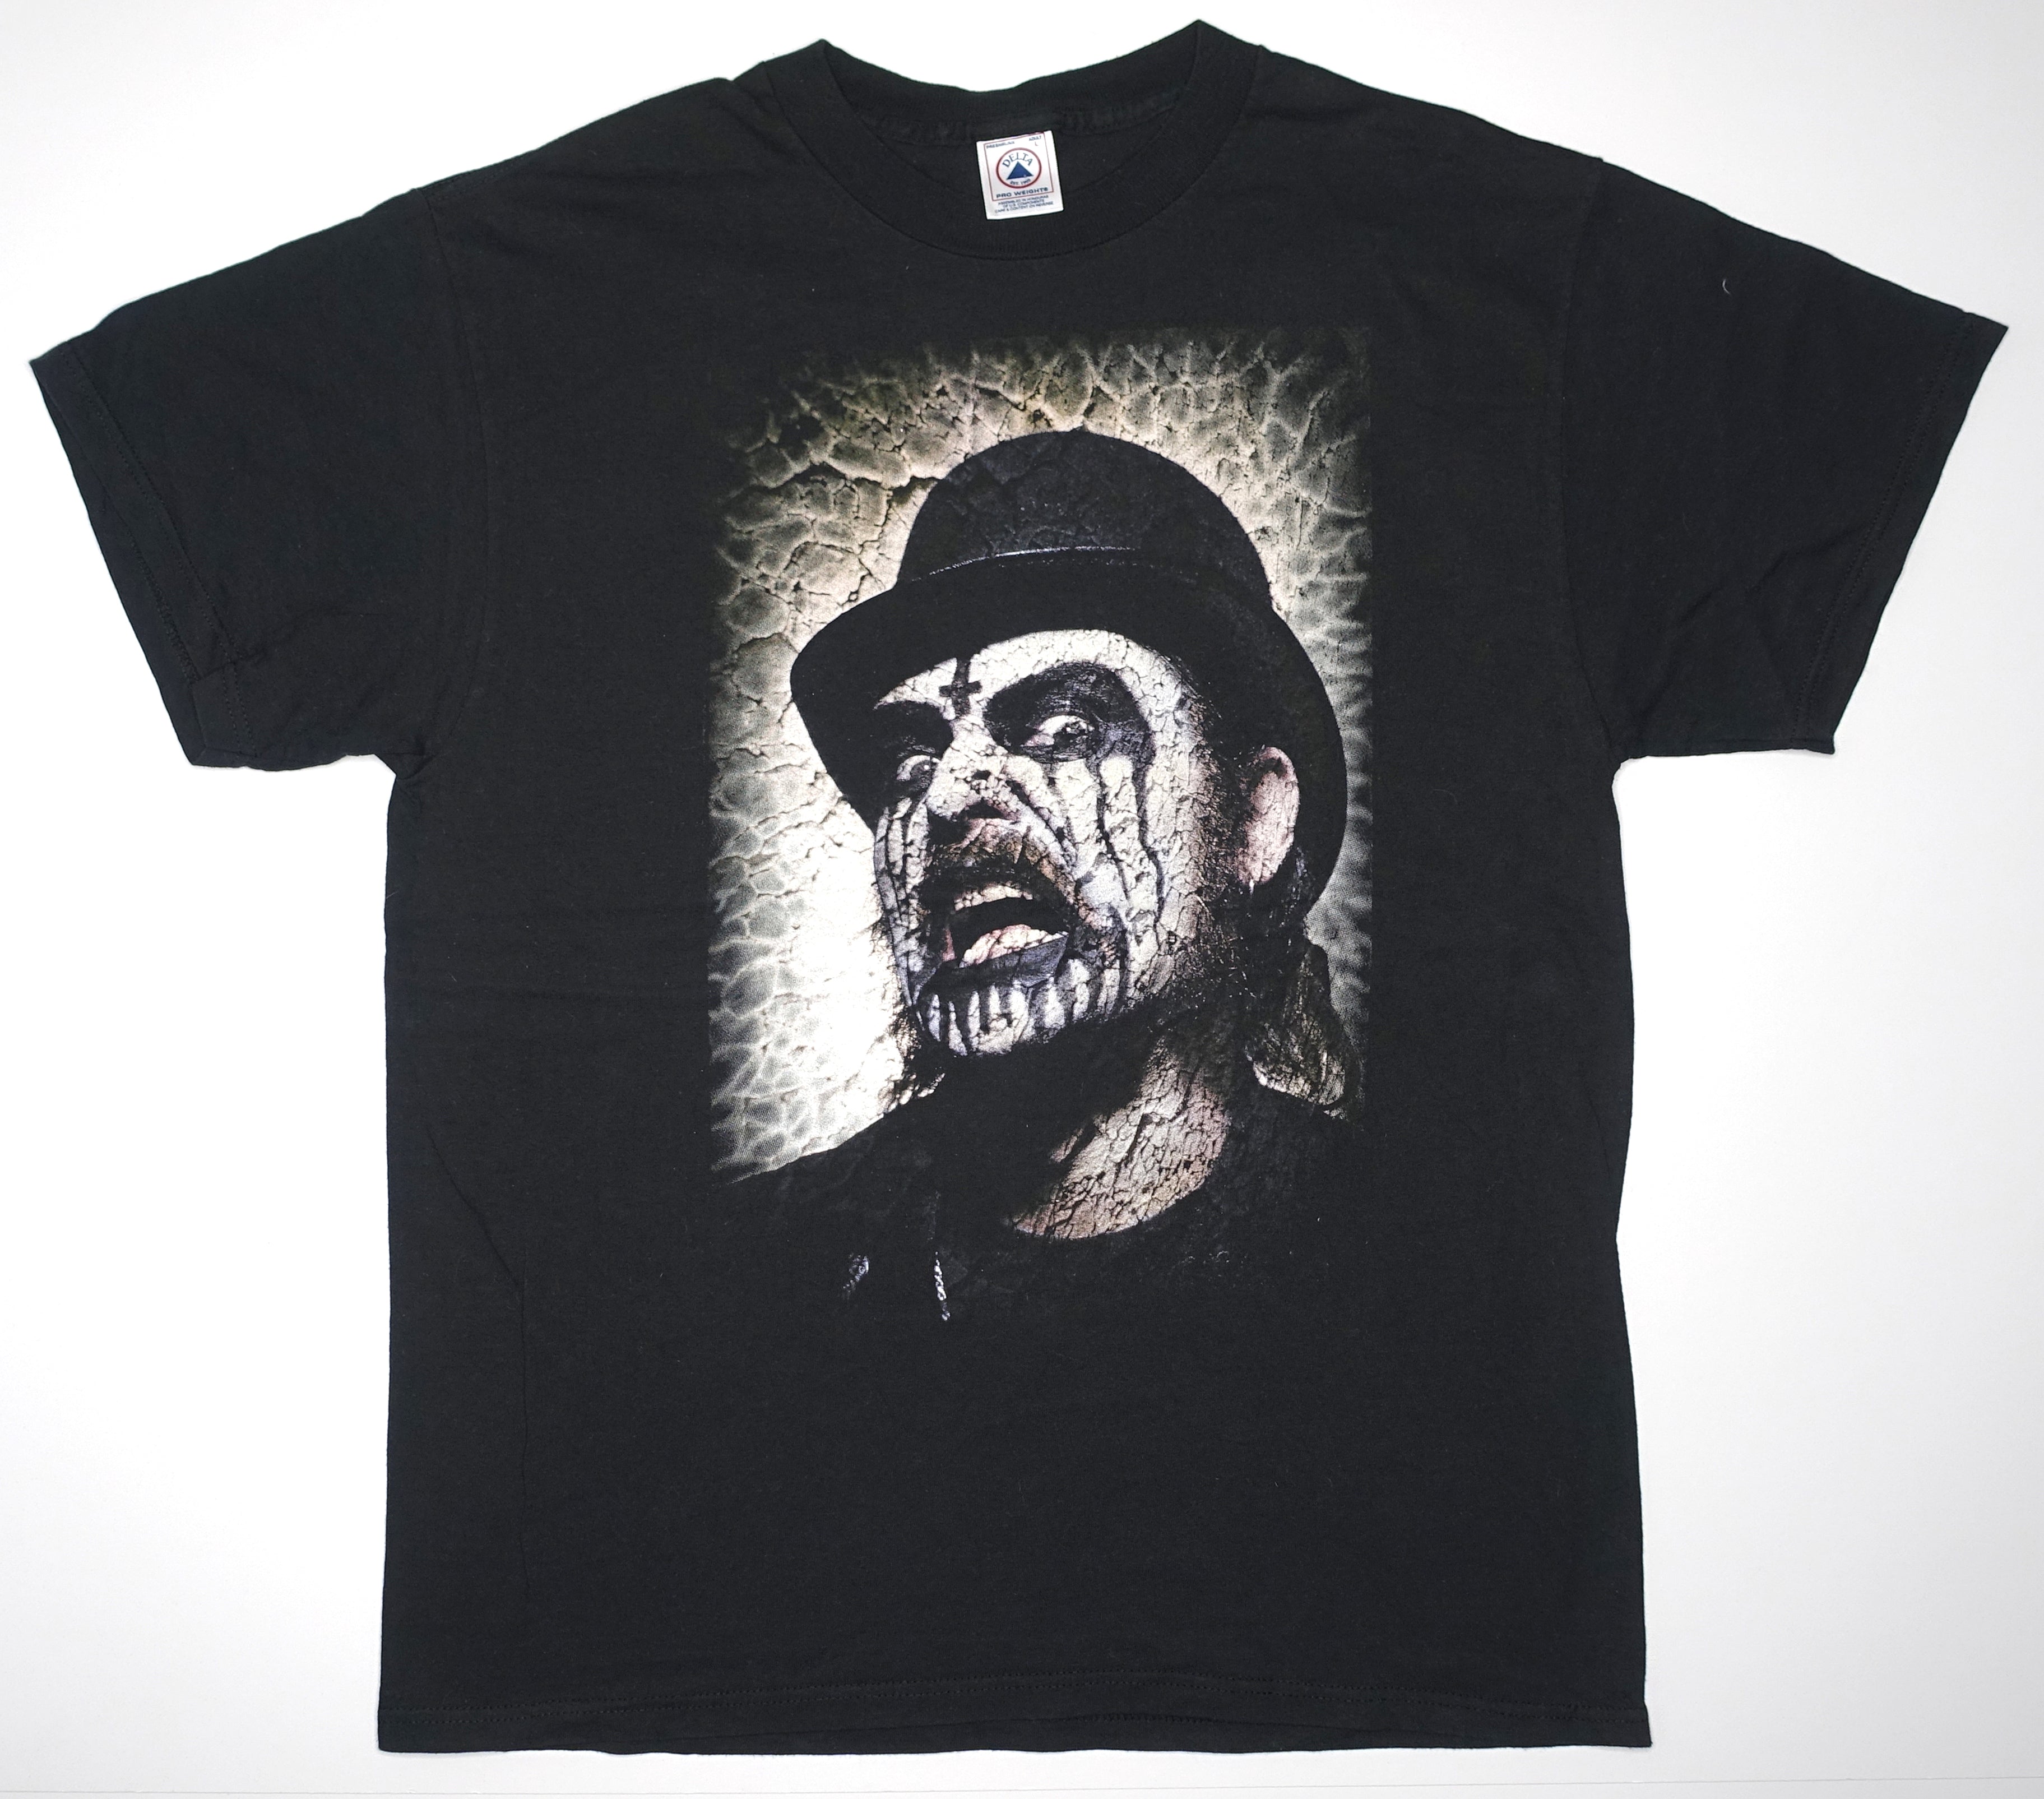 Mercyful Fate – King Diamond Cross Tour Shirt Size Large